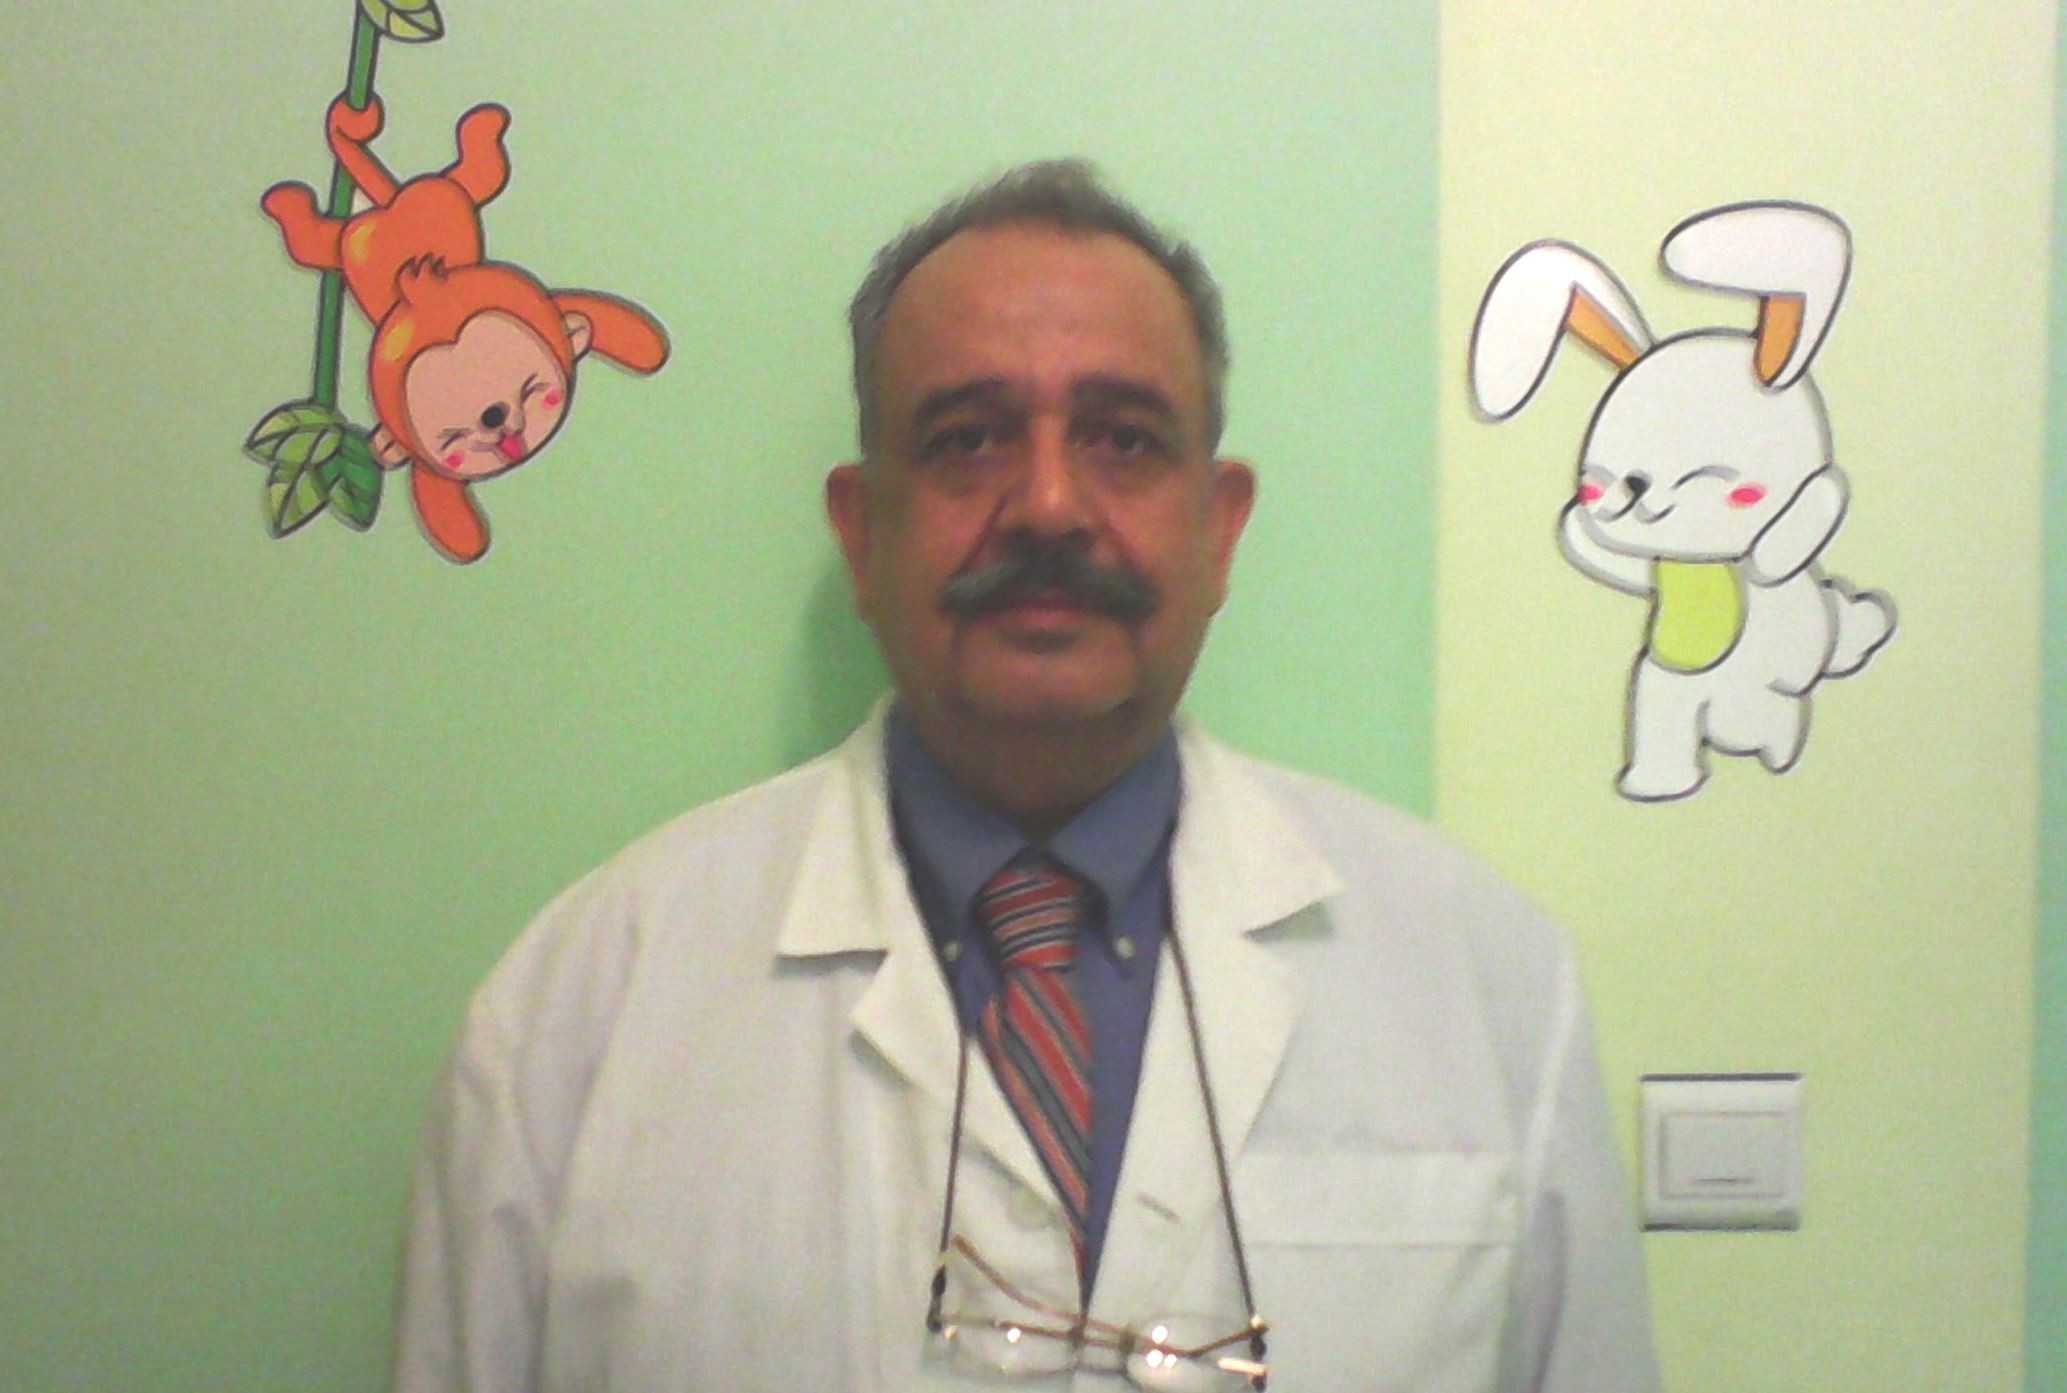 پزشکی دیگر در شفاجو - دکتر حسین شرکا